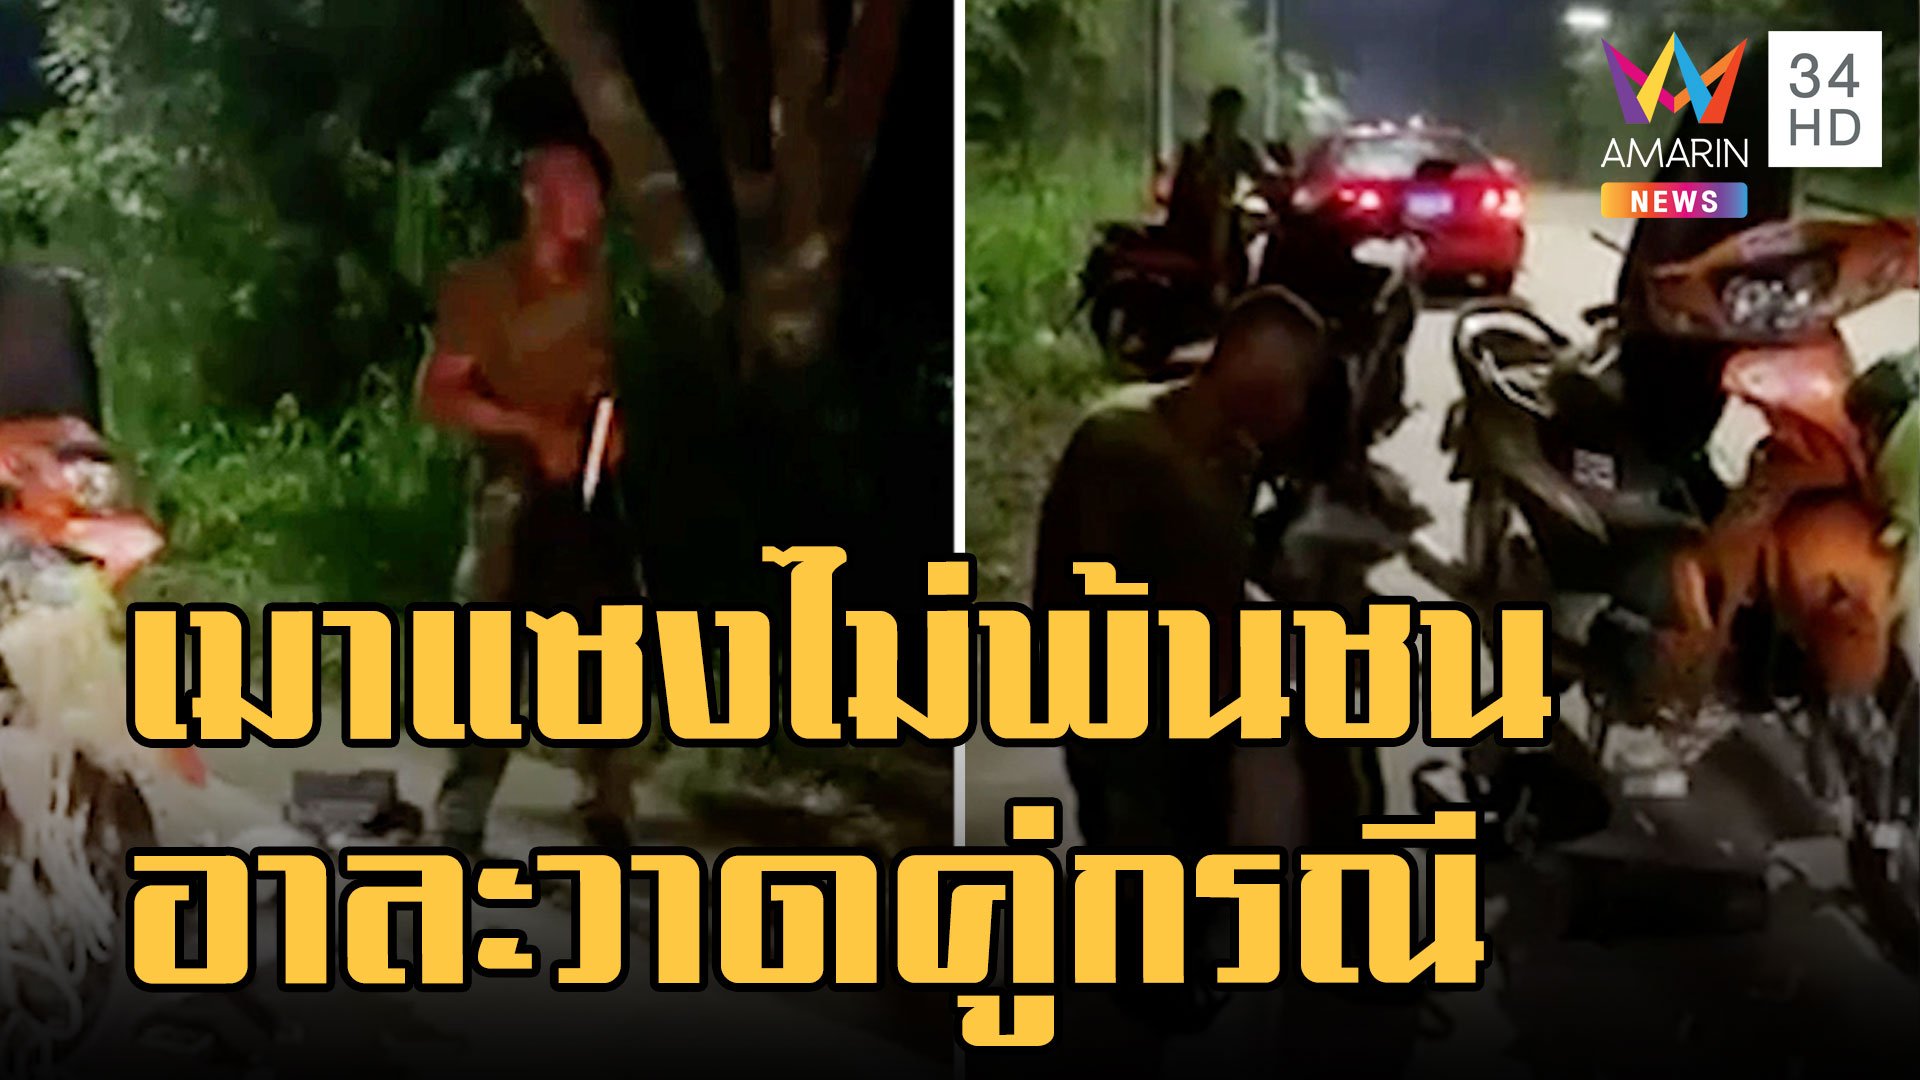 ทหารเมากร่าง ชนชาวบ้านลงรถอาละวาด  | ข่าวเที่ยงอมรินทร์ | 31 ต.ค. 65 | AMARIN TVHD34